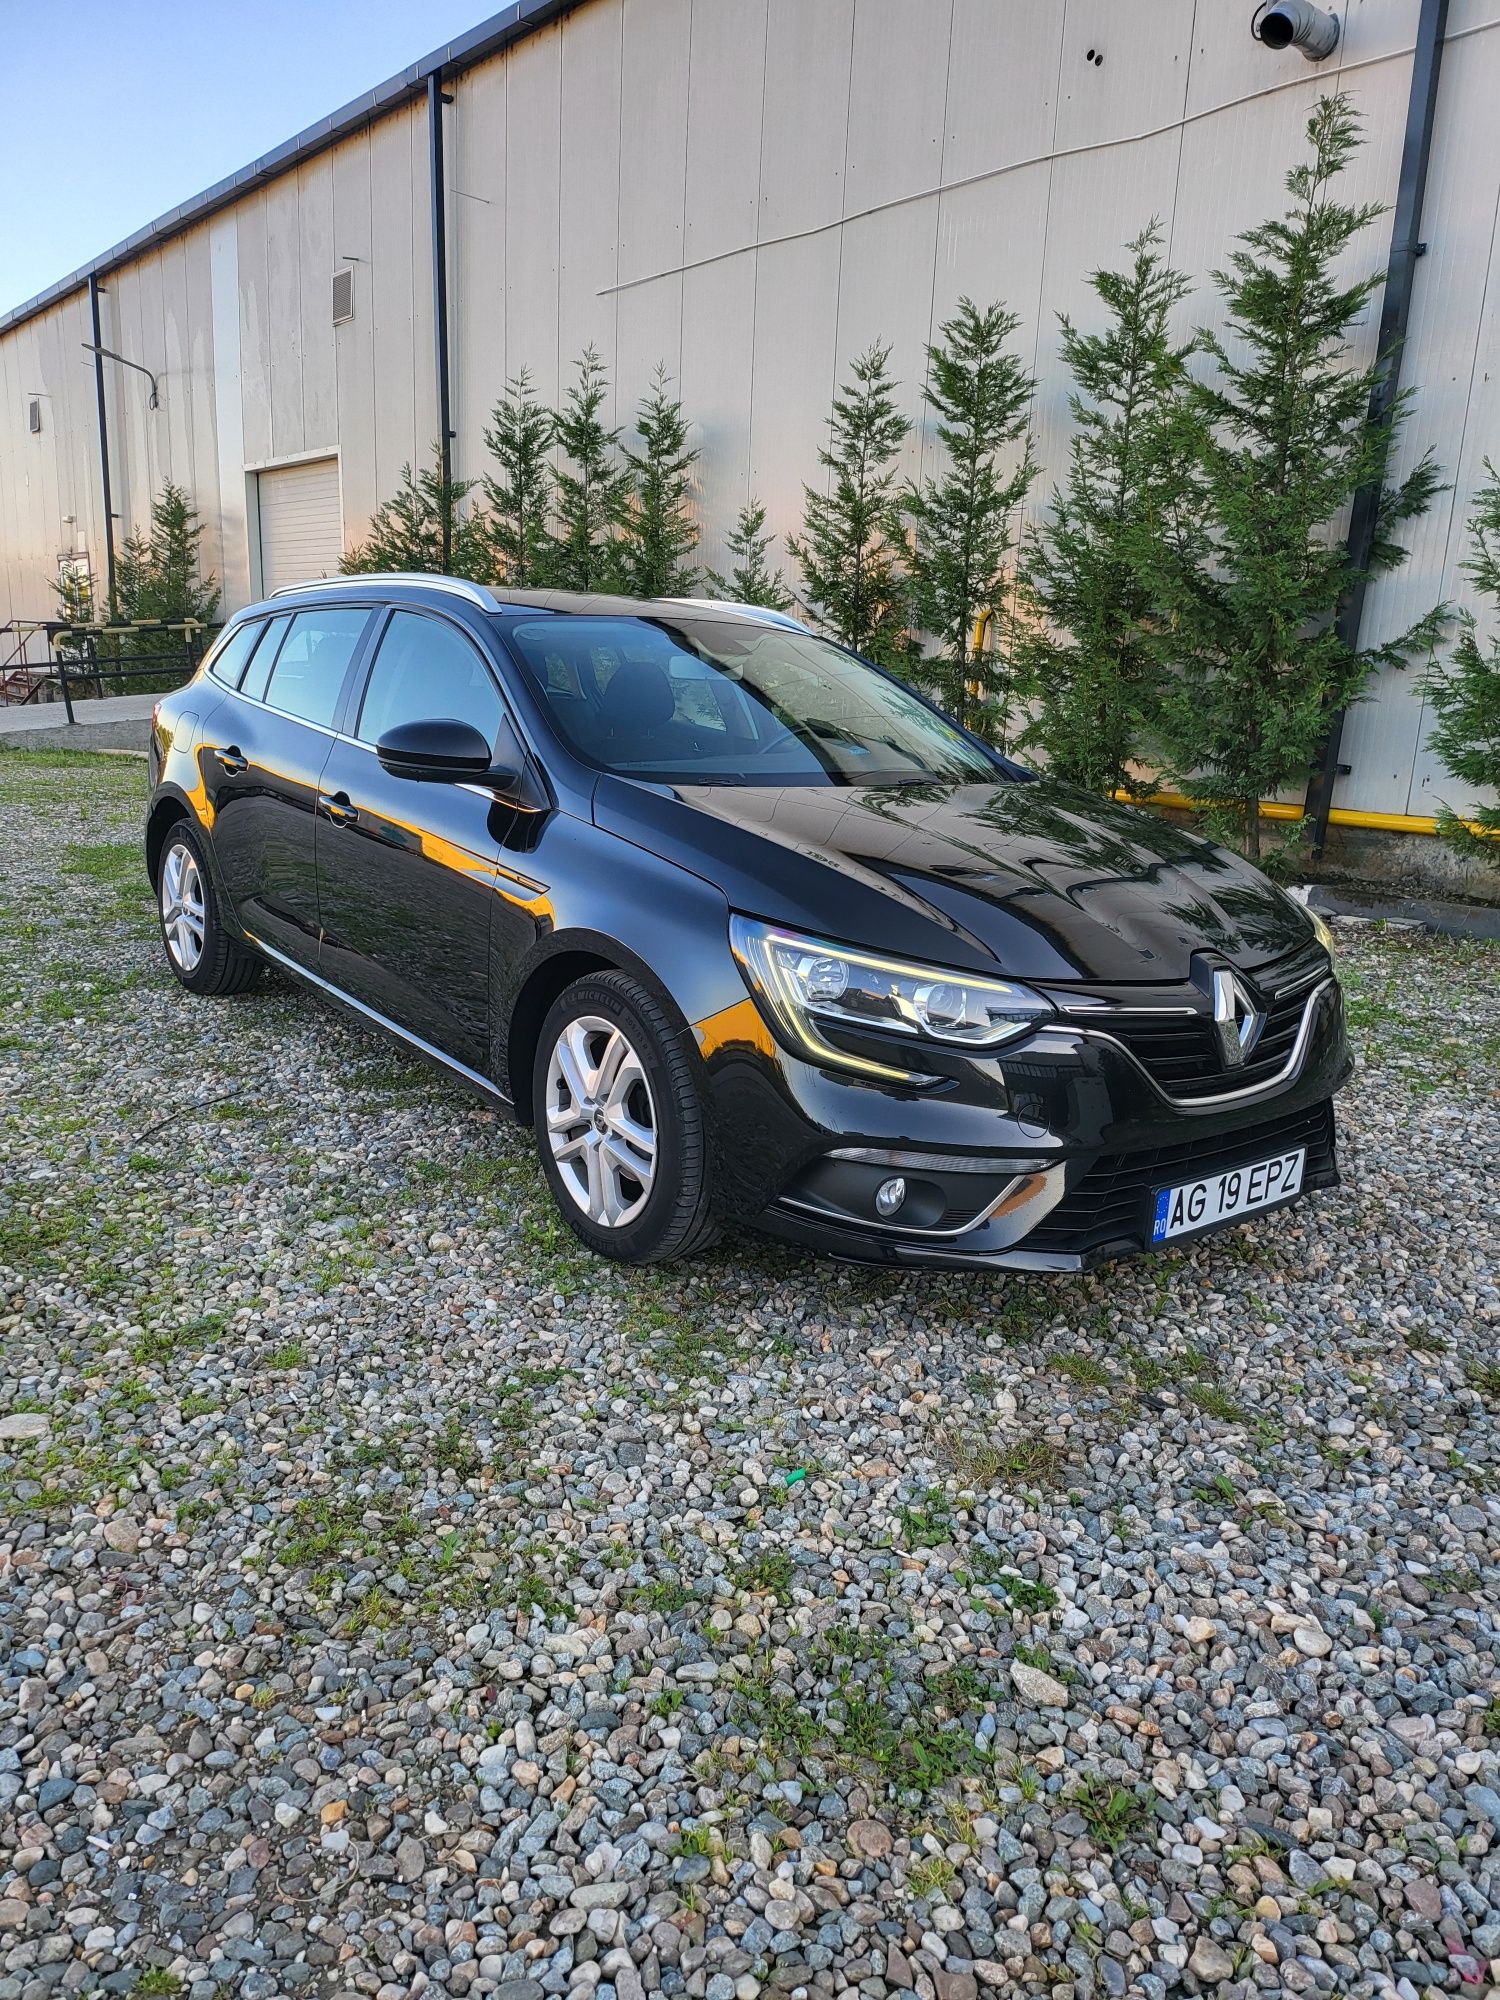 Renault Megane 2018,euro 6, 1,5 dci fără adblue,proprietar